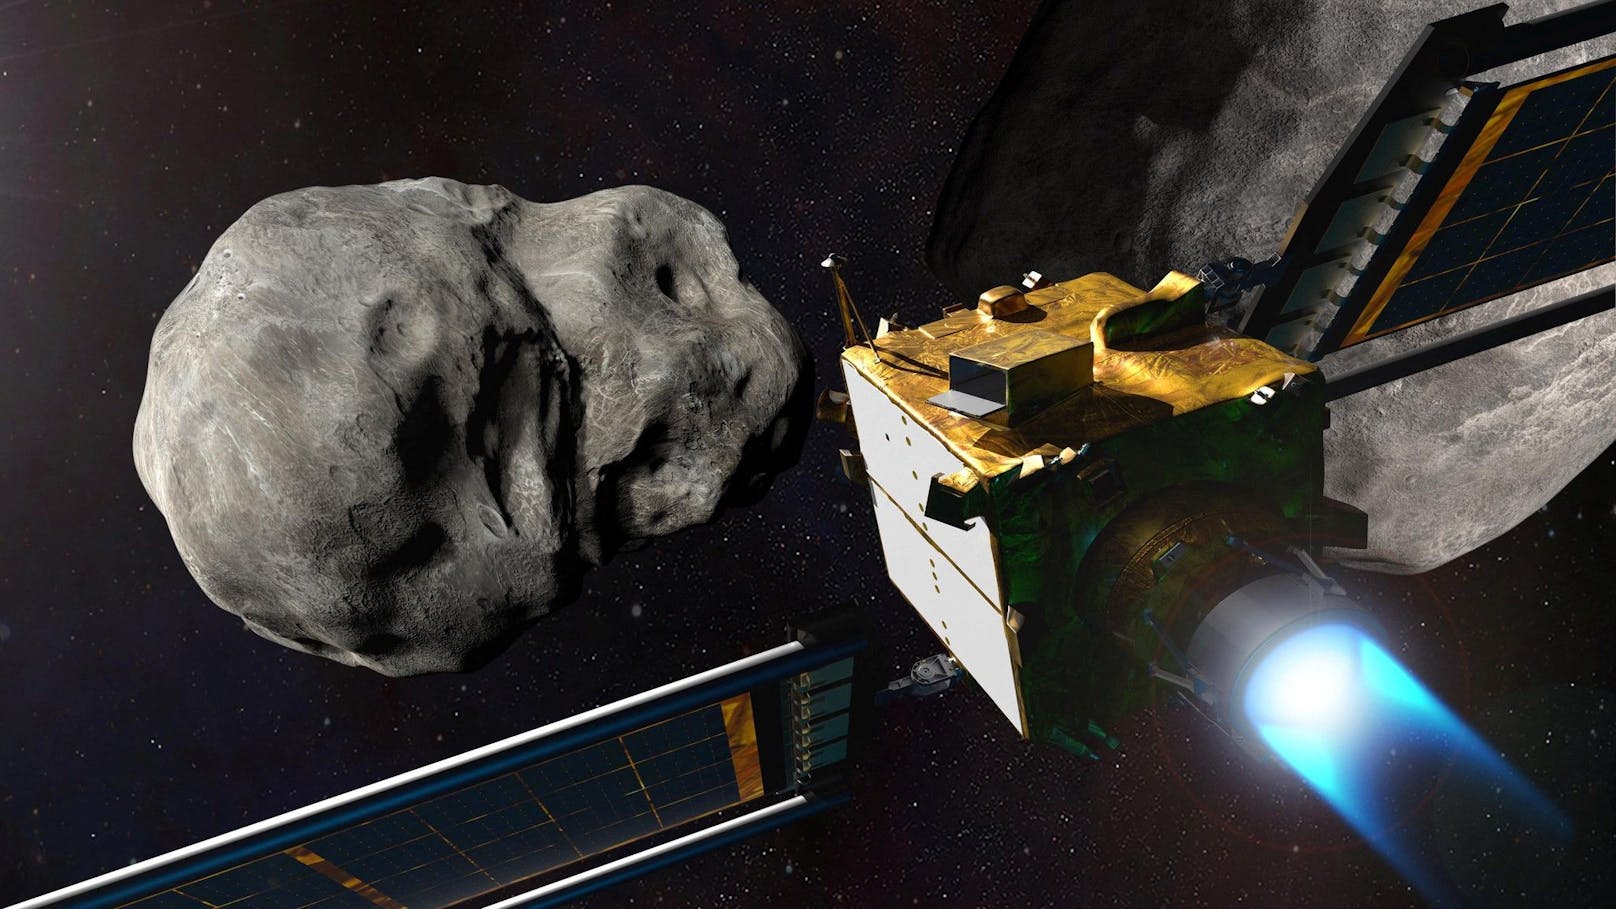 Nun beginne aber die eigentliche wissenschaftliche Arbeit, sagte NASA-Managerin Glaze. Denn jetzt gelte es zu untersuchen, ob sich die rund zwölfstündige Umlaufbahn des Asteroidenmondes Dimorphos durch den Einschlag der DART-Sonde tatsächlich und in wie weit verändert hat.